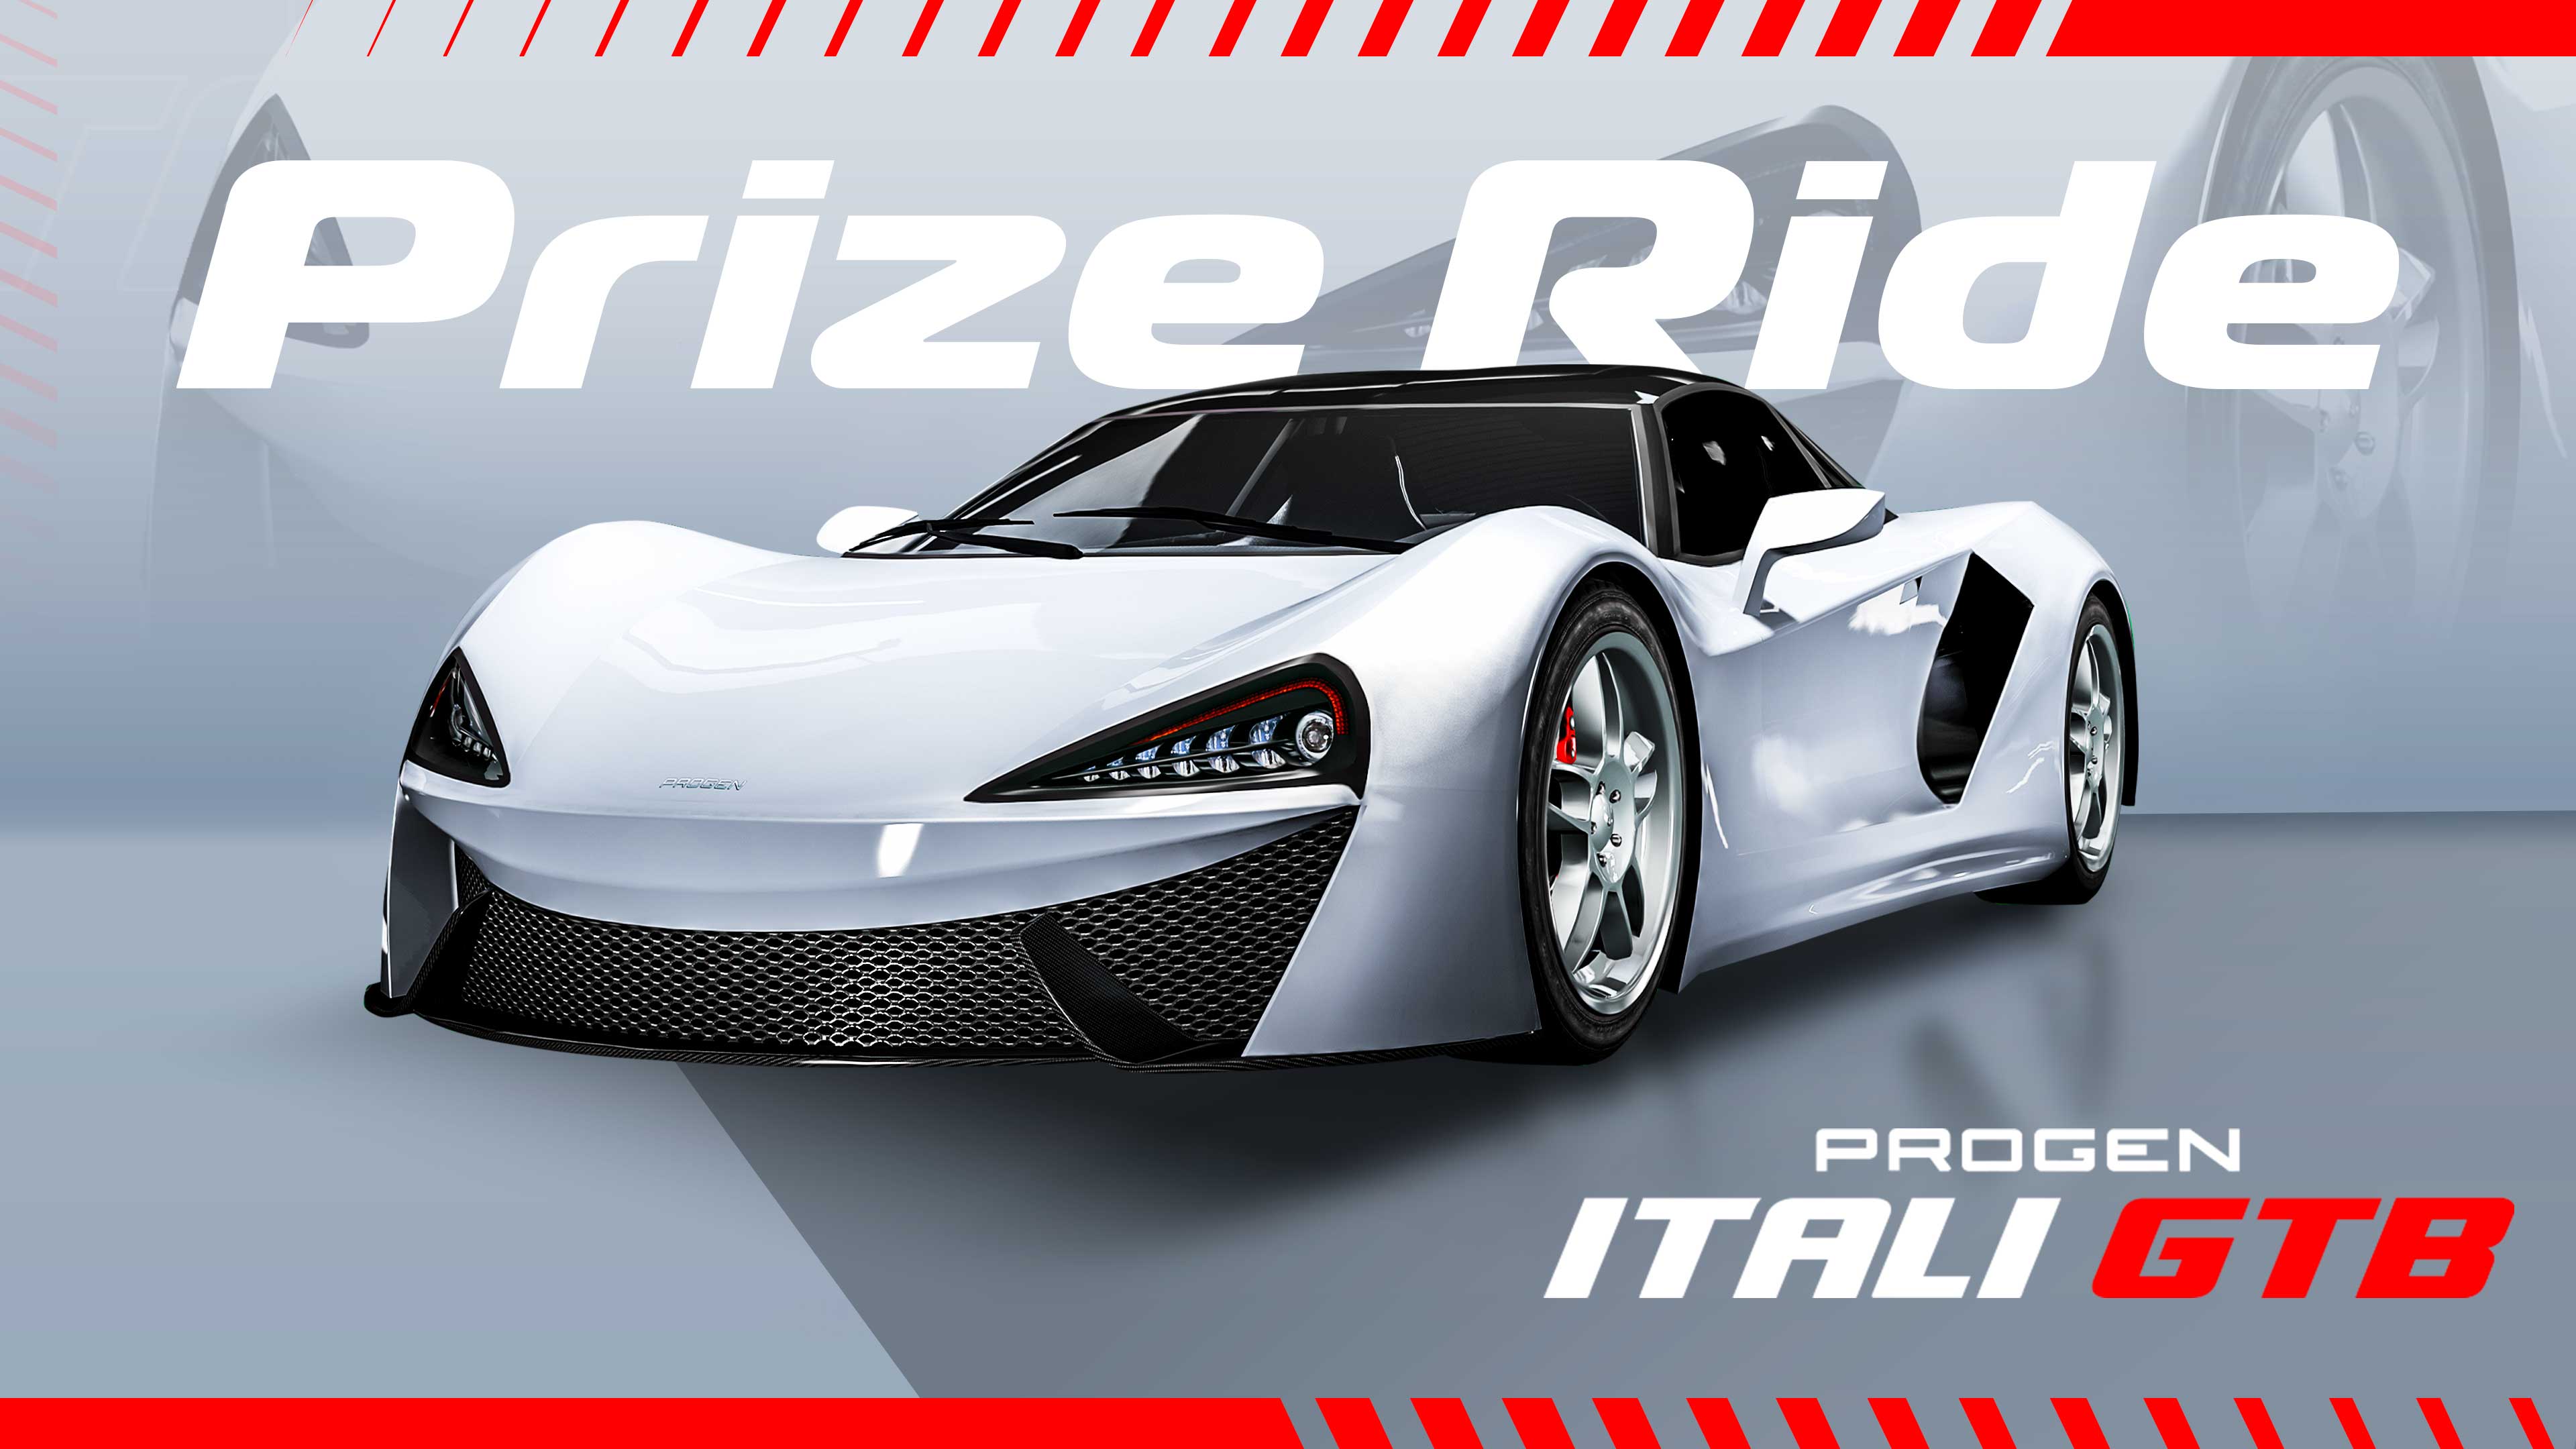 GTA Online Los Santos Tuners Prize Ride: Progen Itali GTB